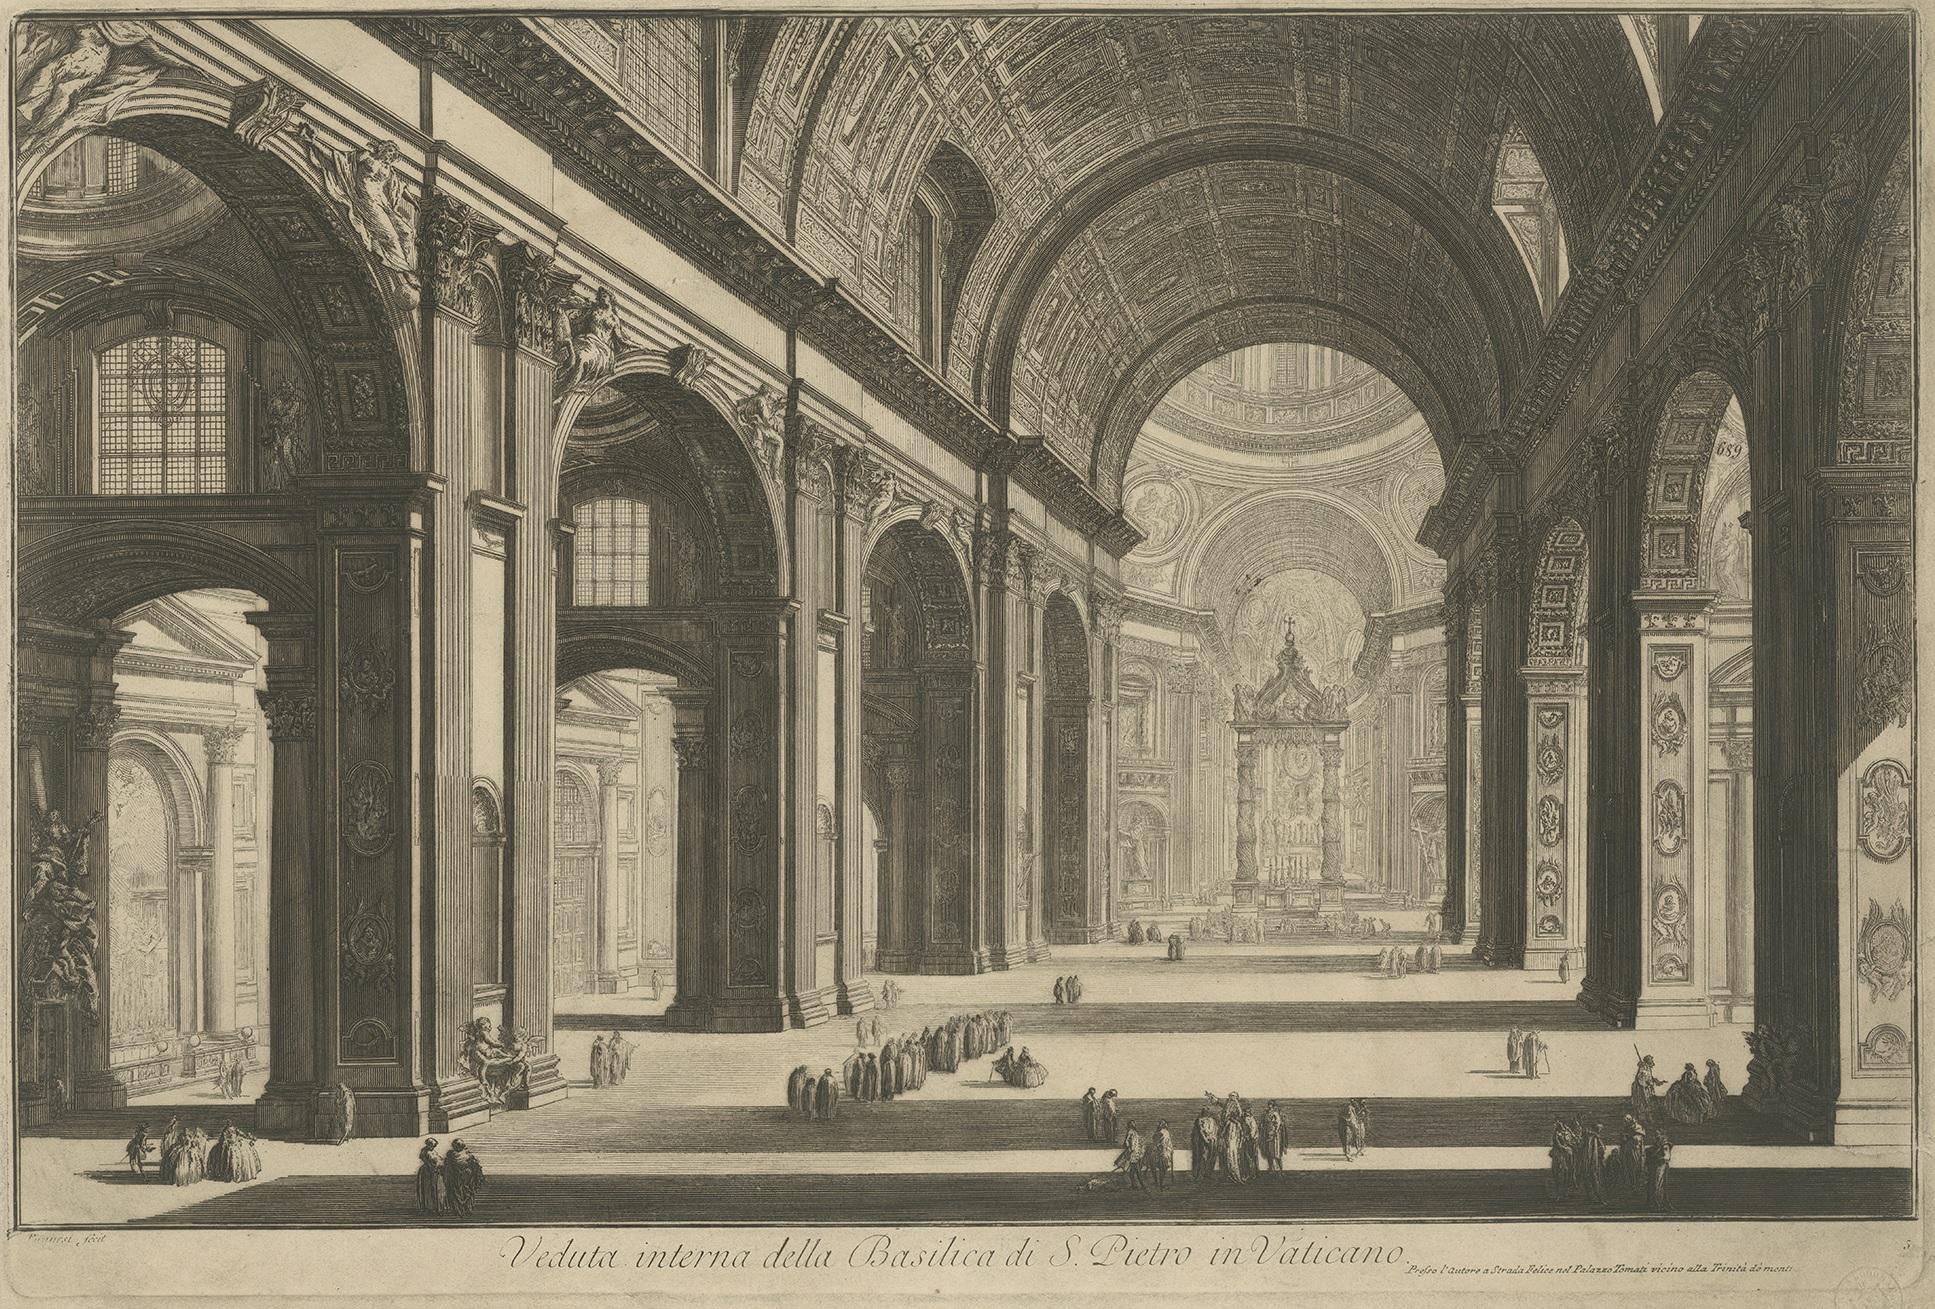 Antique print titled 'Veduta interna della Basilica di S. Pietro in Vaticano'. View of the interior of St Peter's Basilica in the Vatican, Rome. Published after Piranesi, circa 1820.